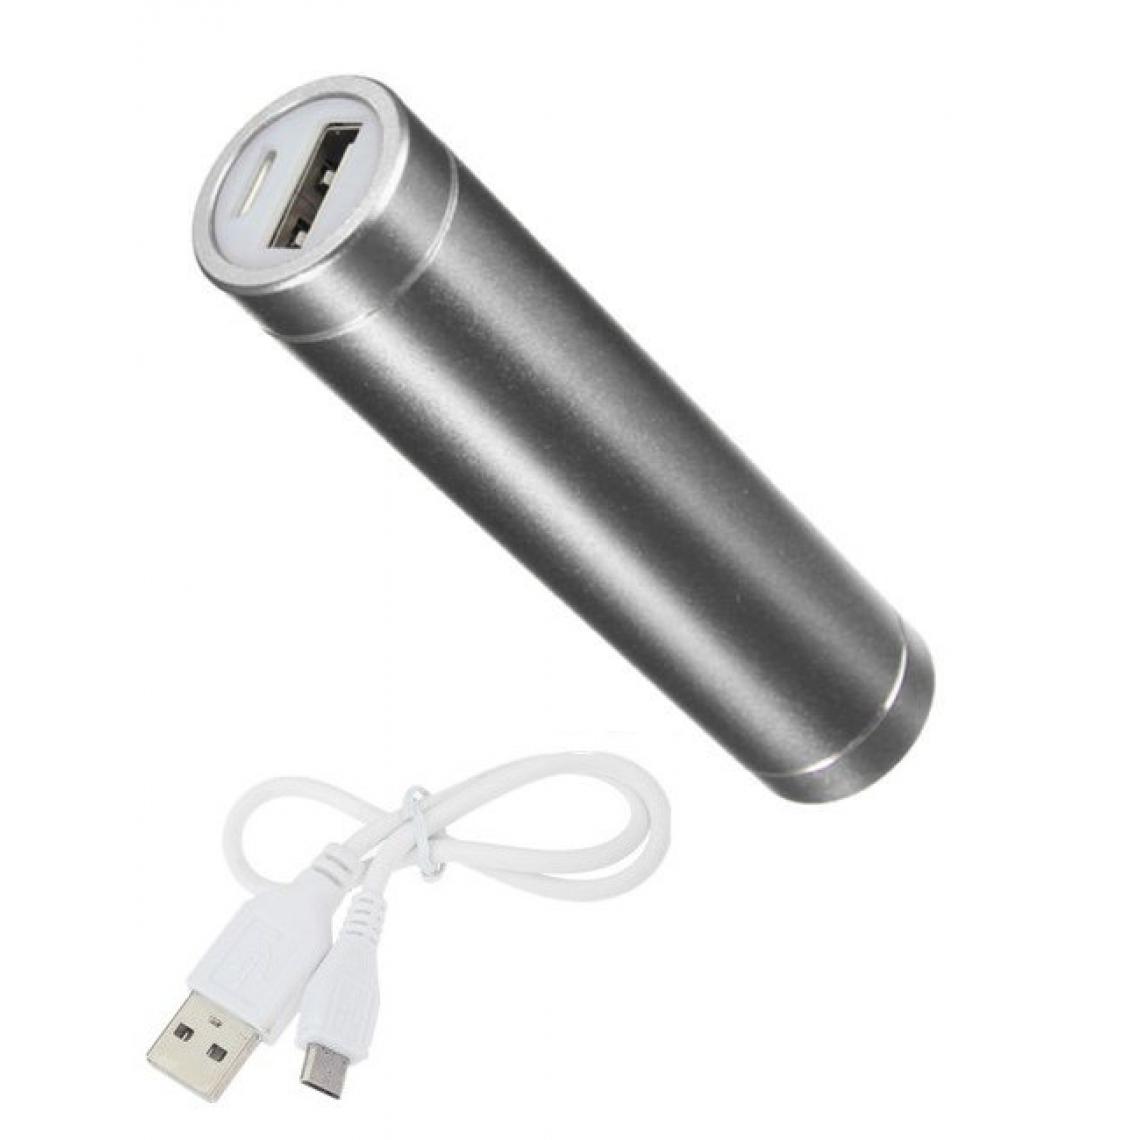 Shot - Batterie Chargeur Externe pour "WIKO View 5 Plus" Power Bank 2600mAh avec Cable USB/Mirco USB Secours Telephone (ARGENT) - Chargeur secteur téléphone